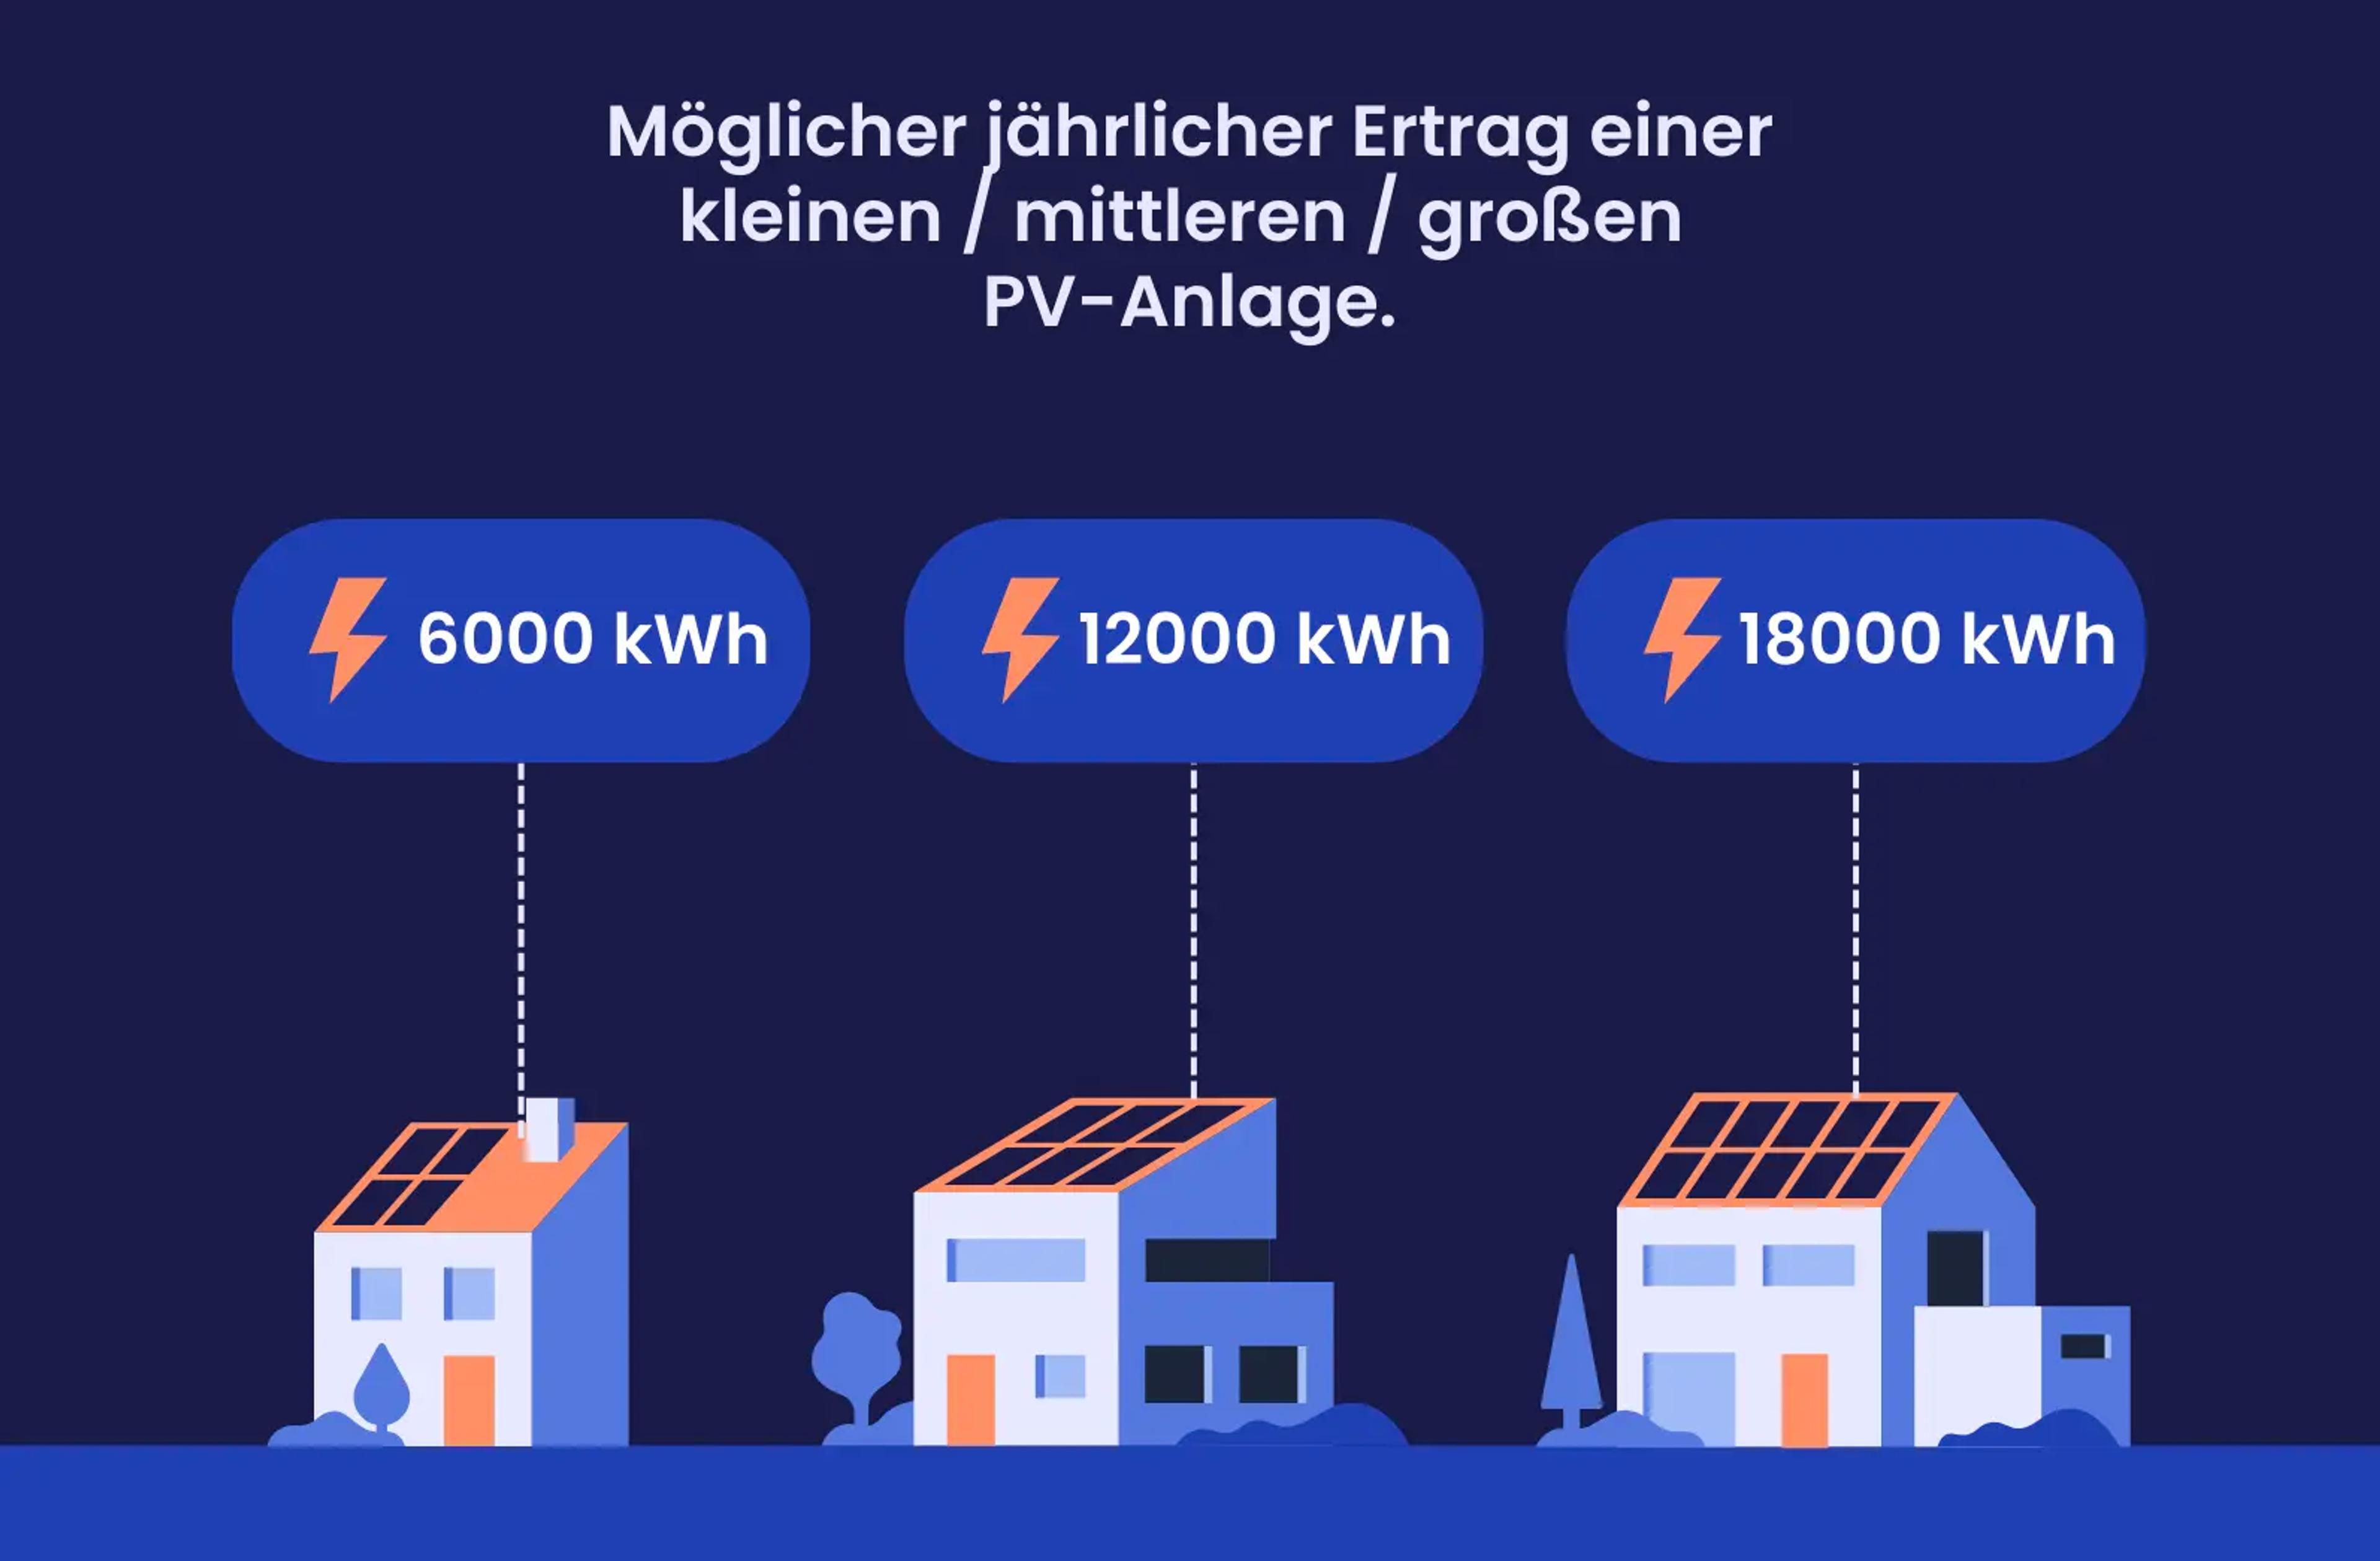 Eine Grafik, die zeigt, wie viele kWh Solaranlagen in Sachsen-Anhalt erzeugen können.